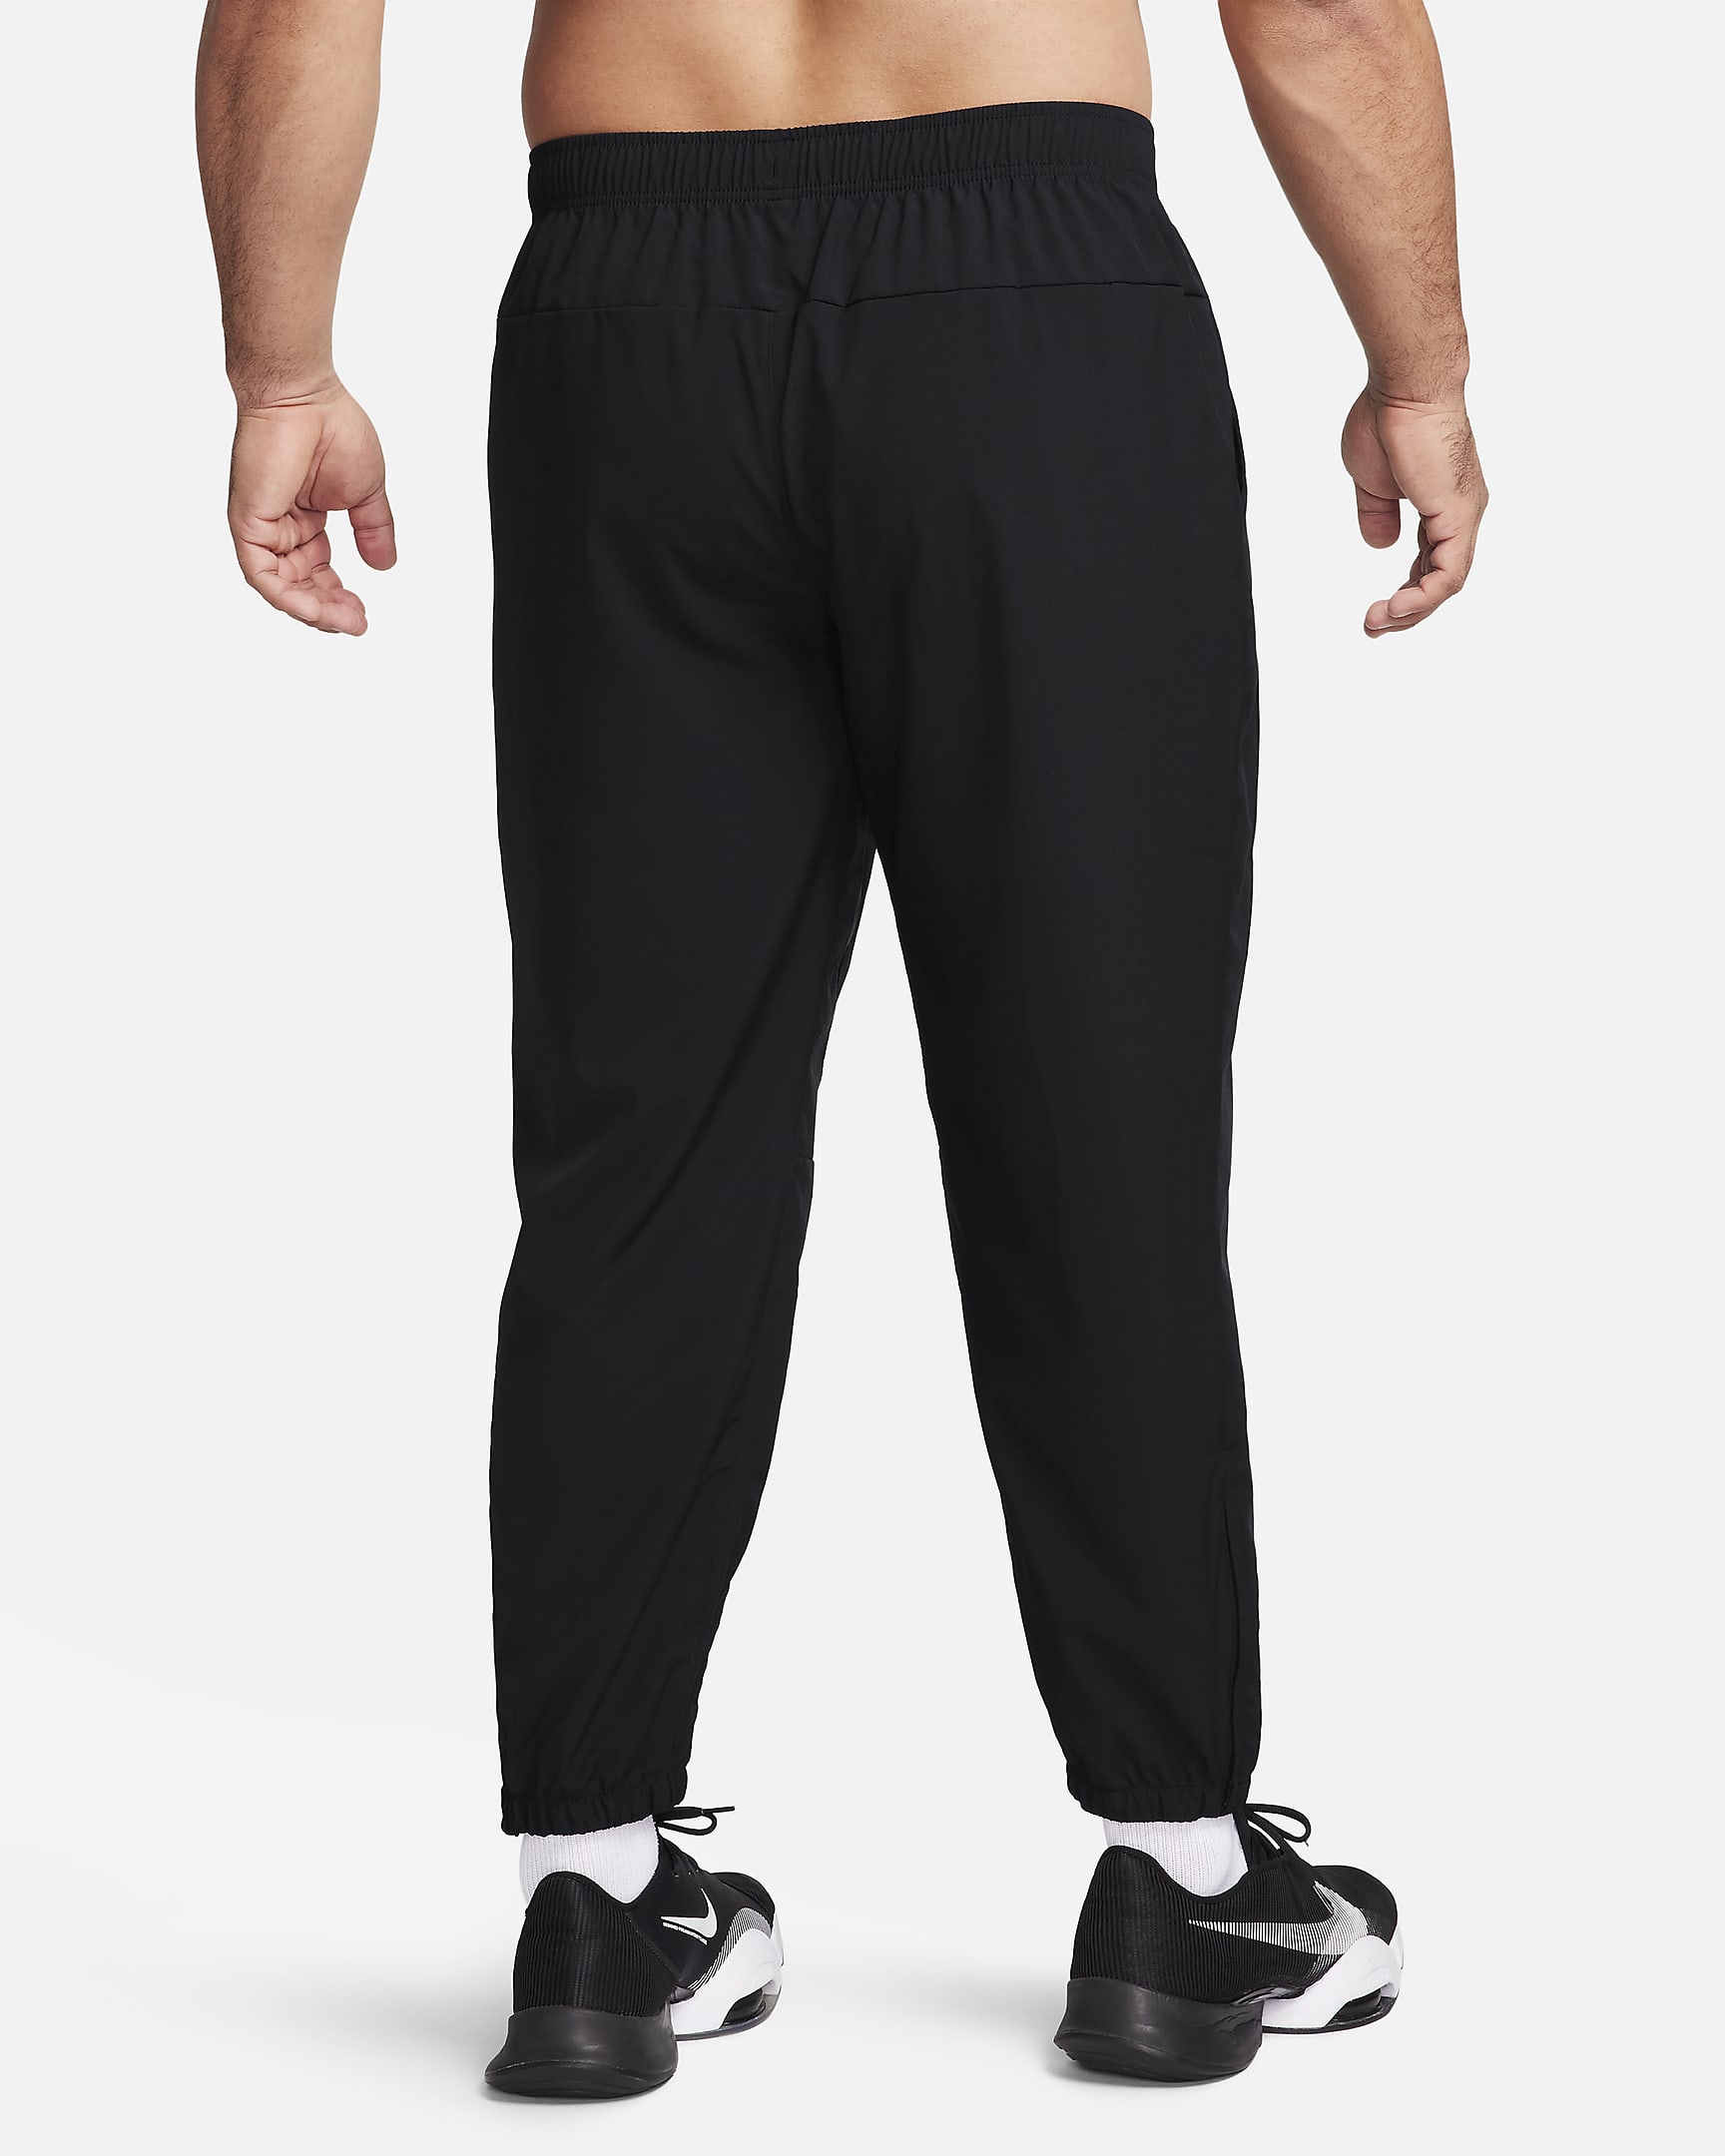 Pantalon fuselé Dri-FIT Nike Form pour homme - Noir/Noir